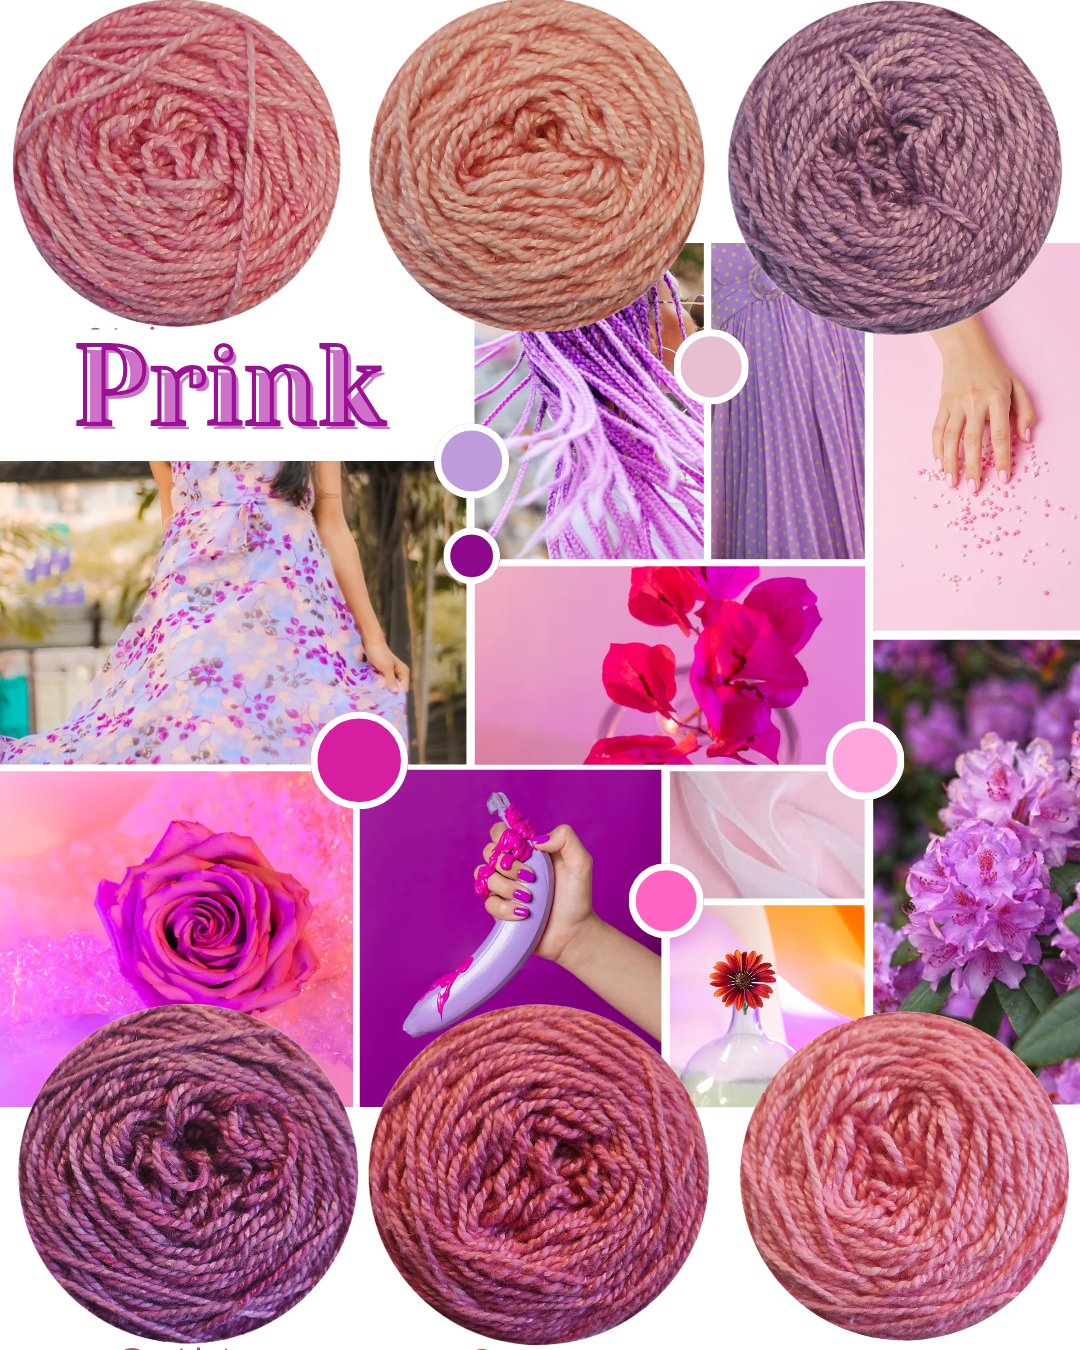 PRINK - Shimmer Palette Packs